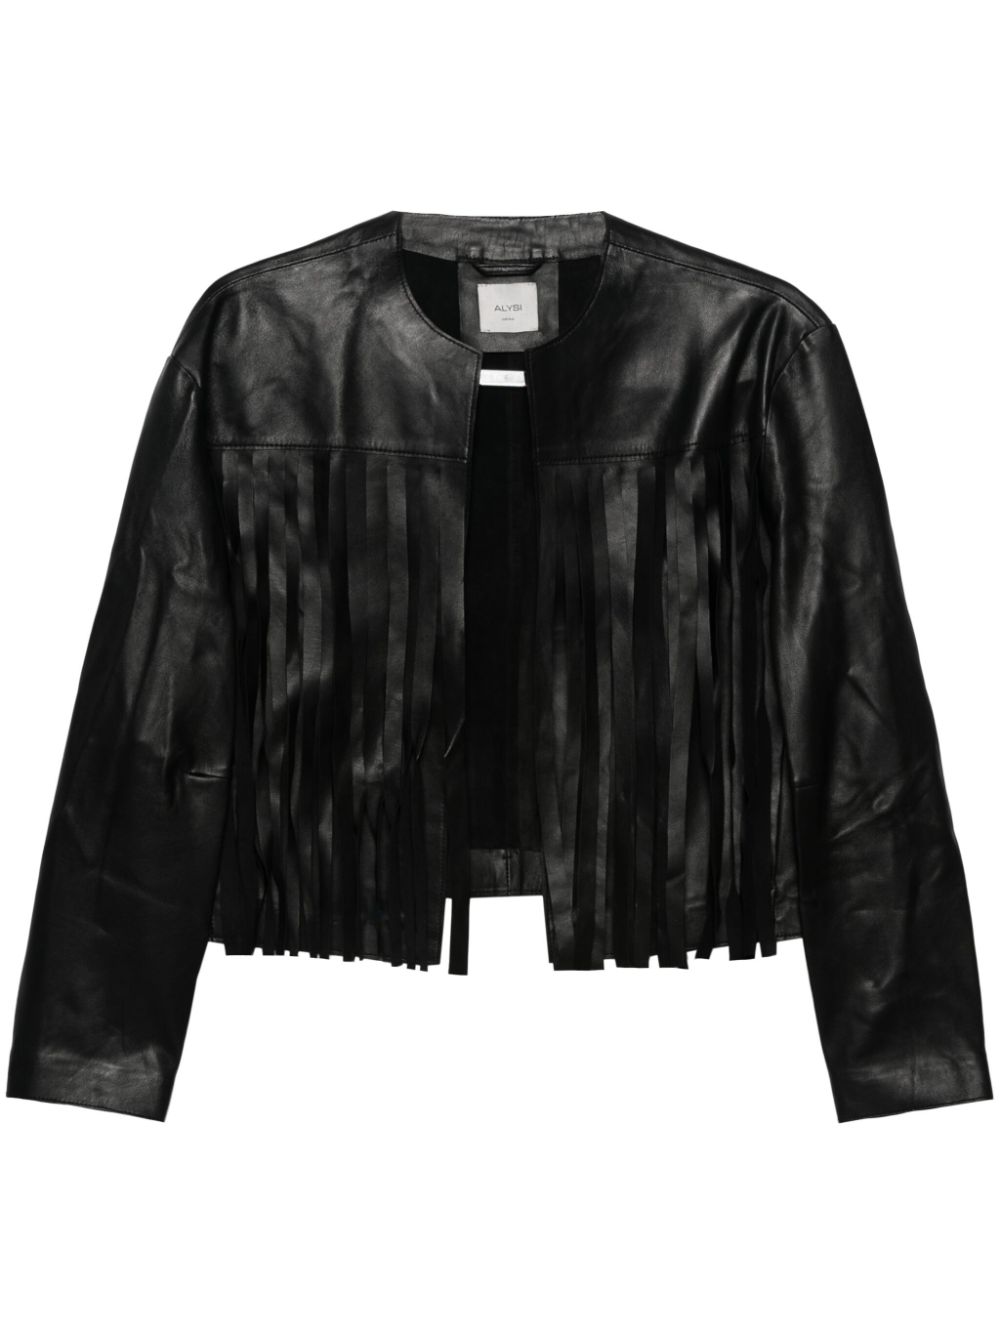 Alysi ALYSI- Fringed Leather Jacket